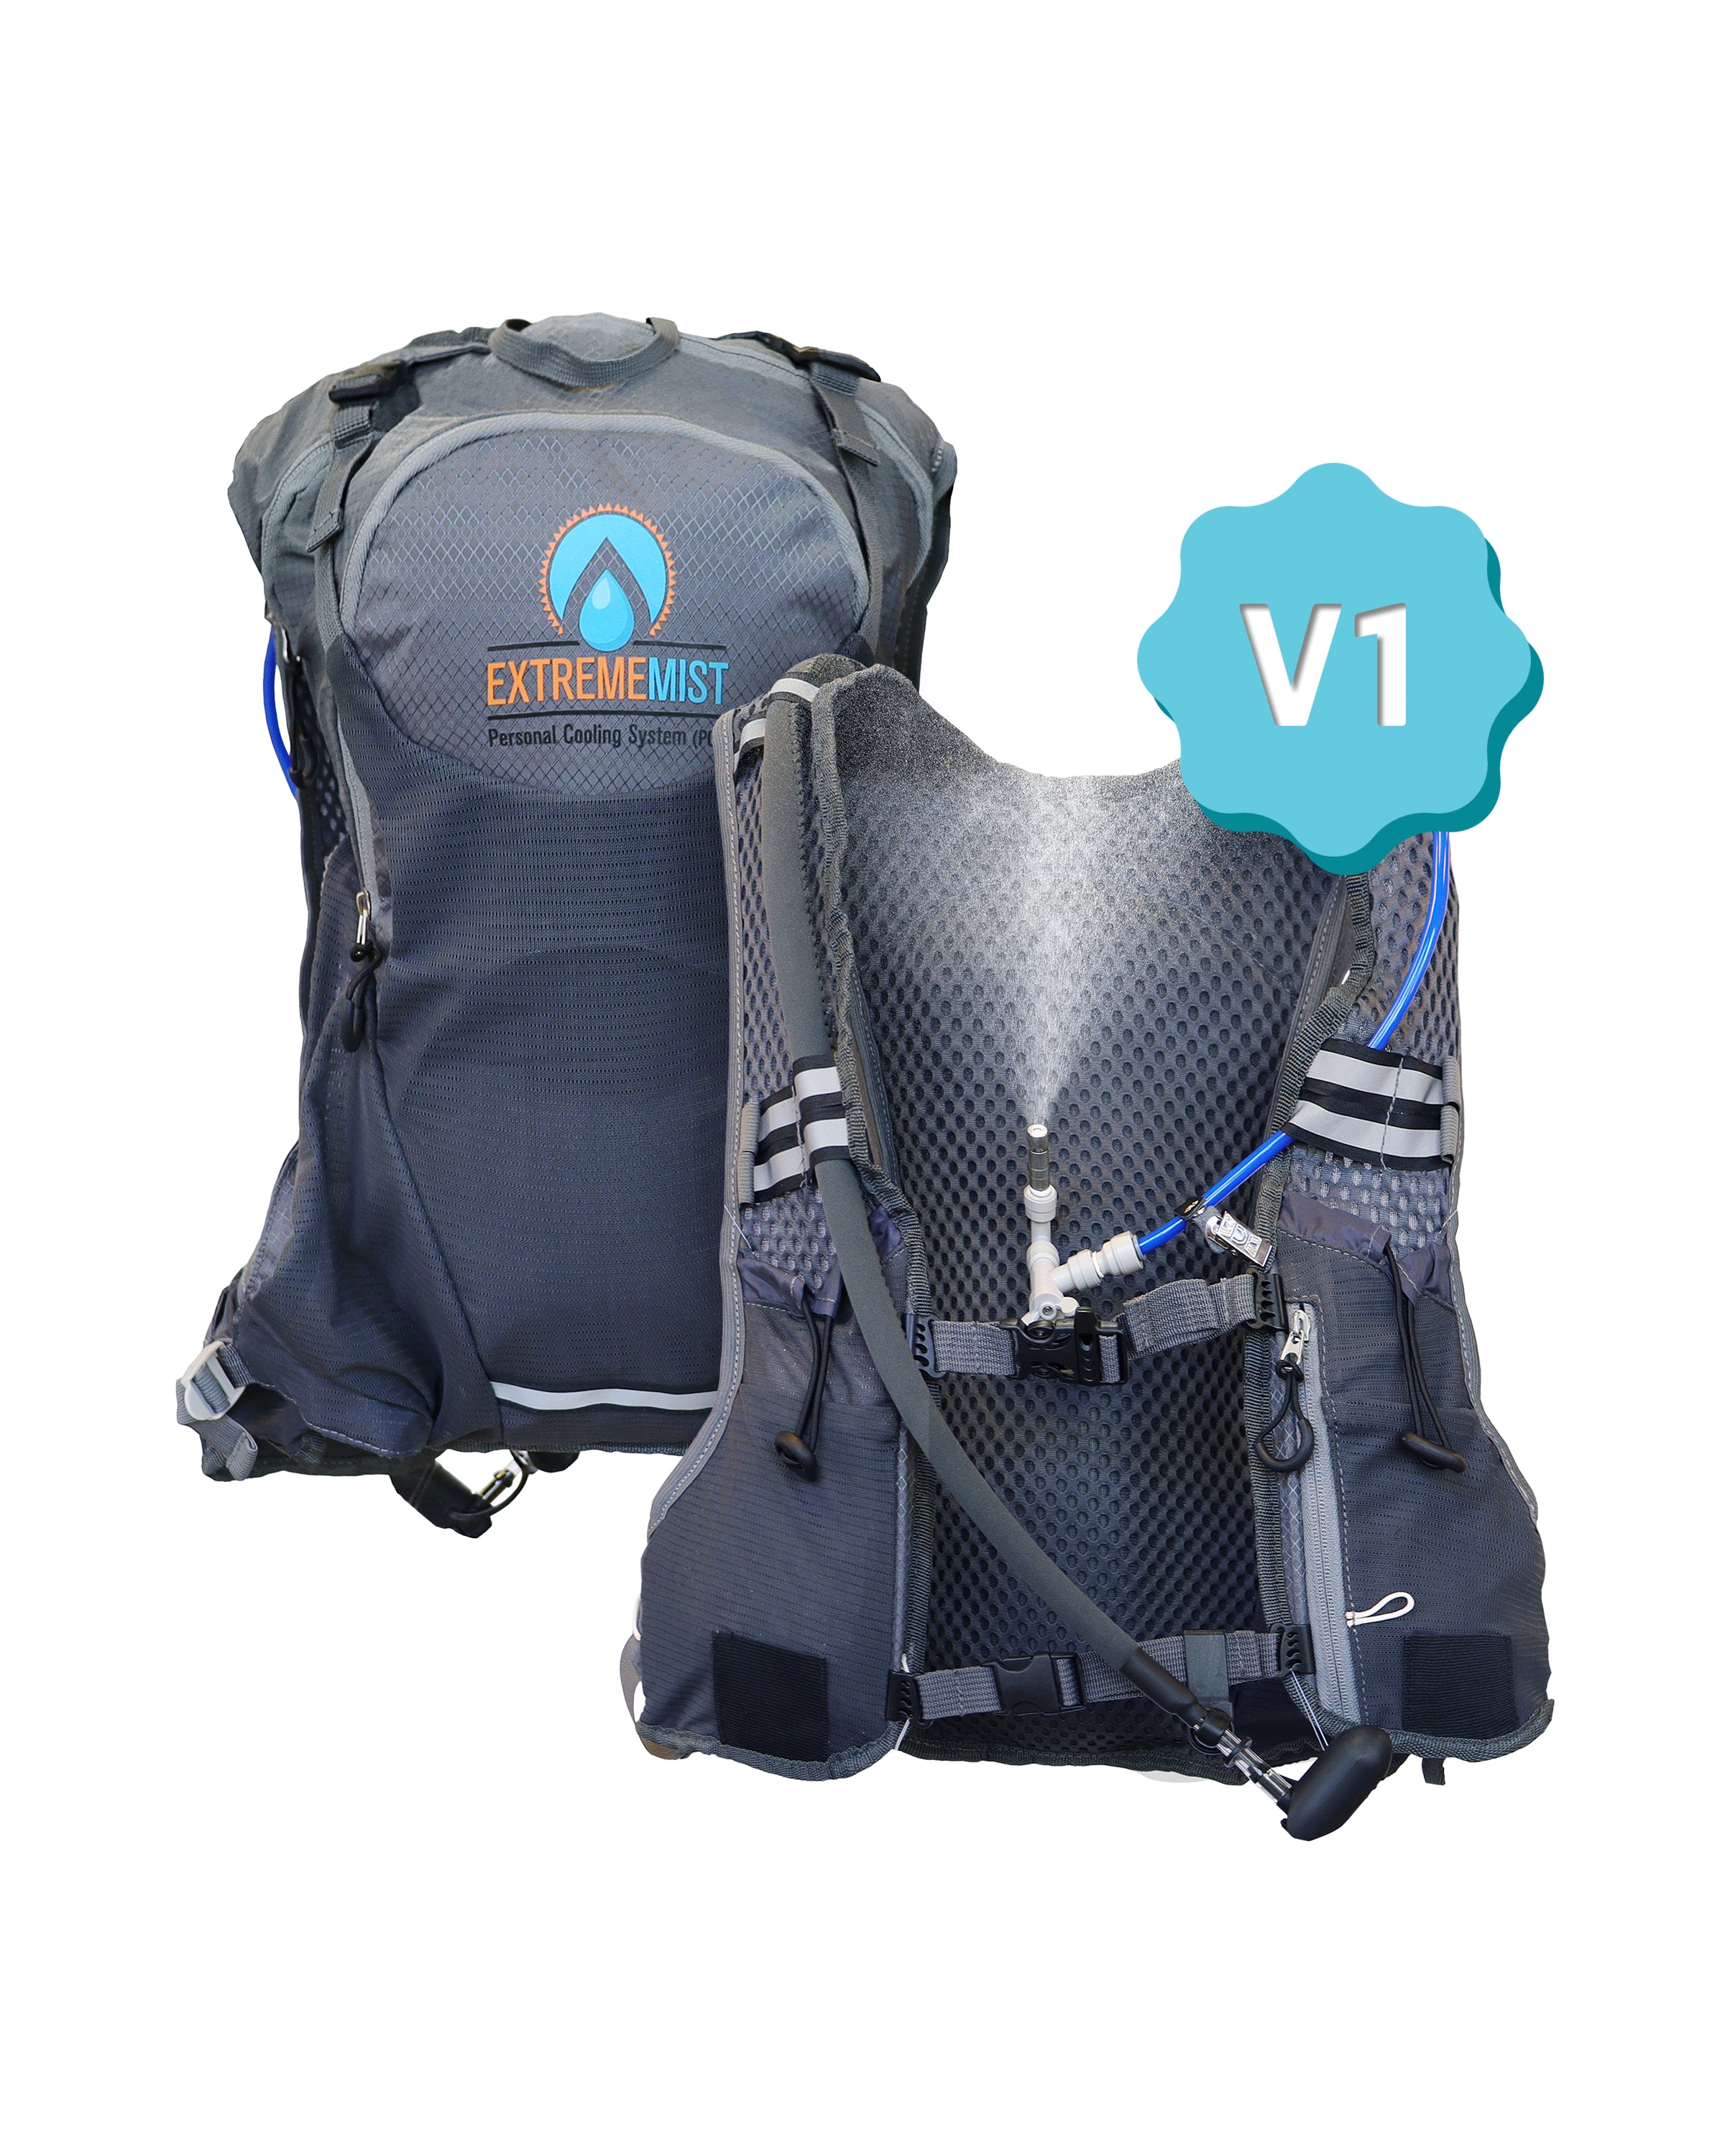 V1-Backpack-Website.jpg